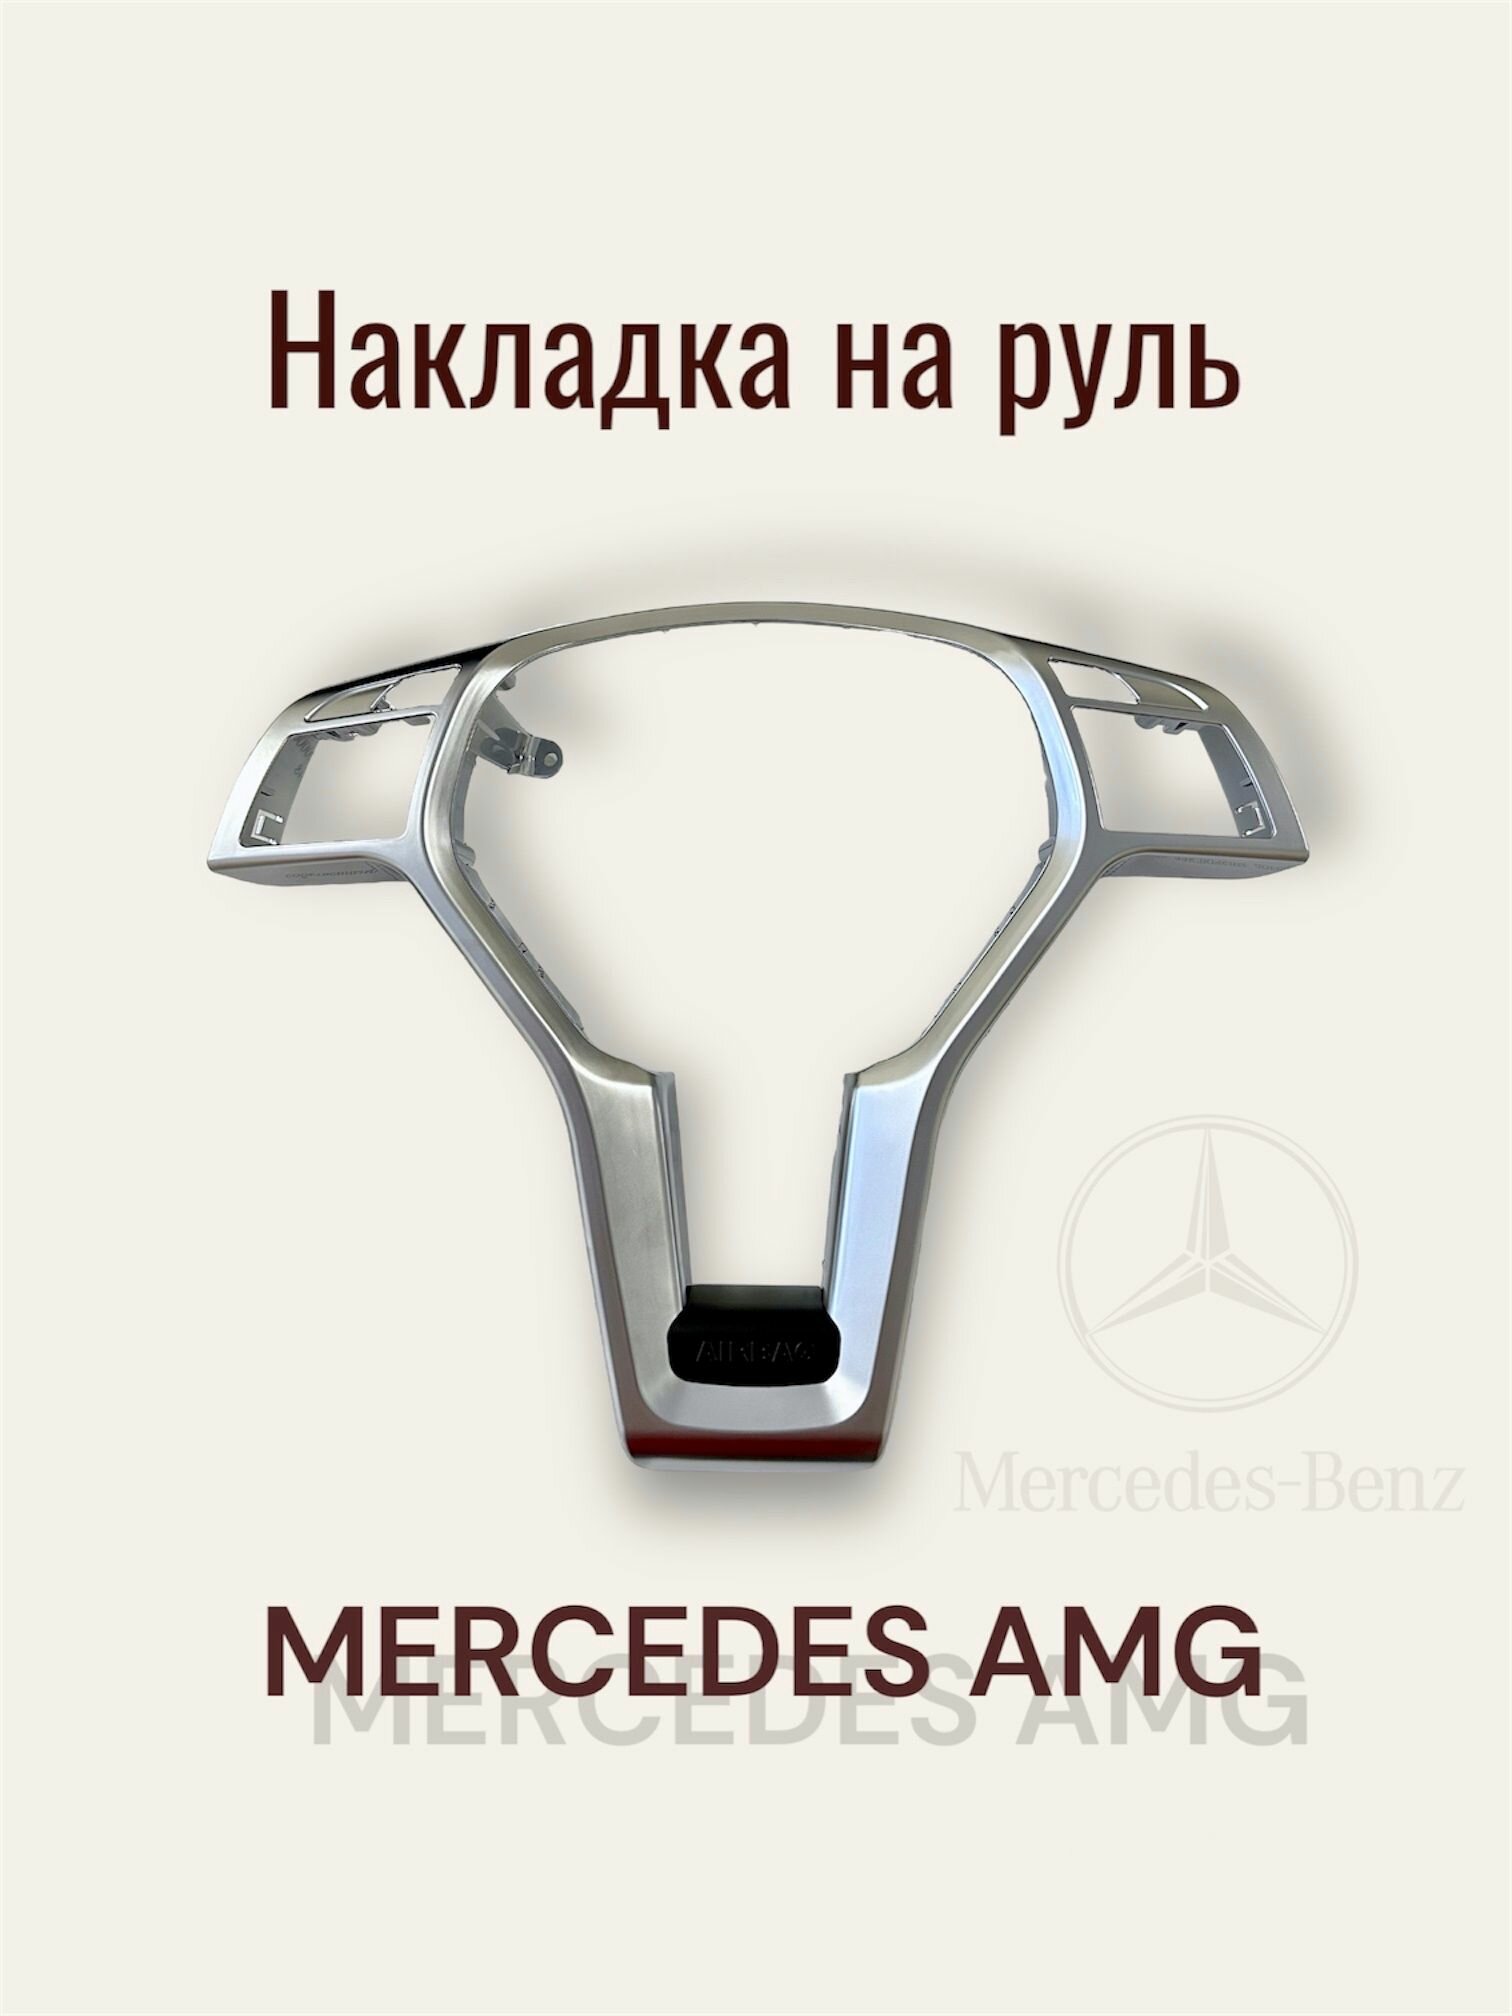 Накладка на руль Mercedes W204